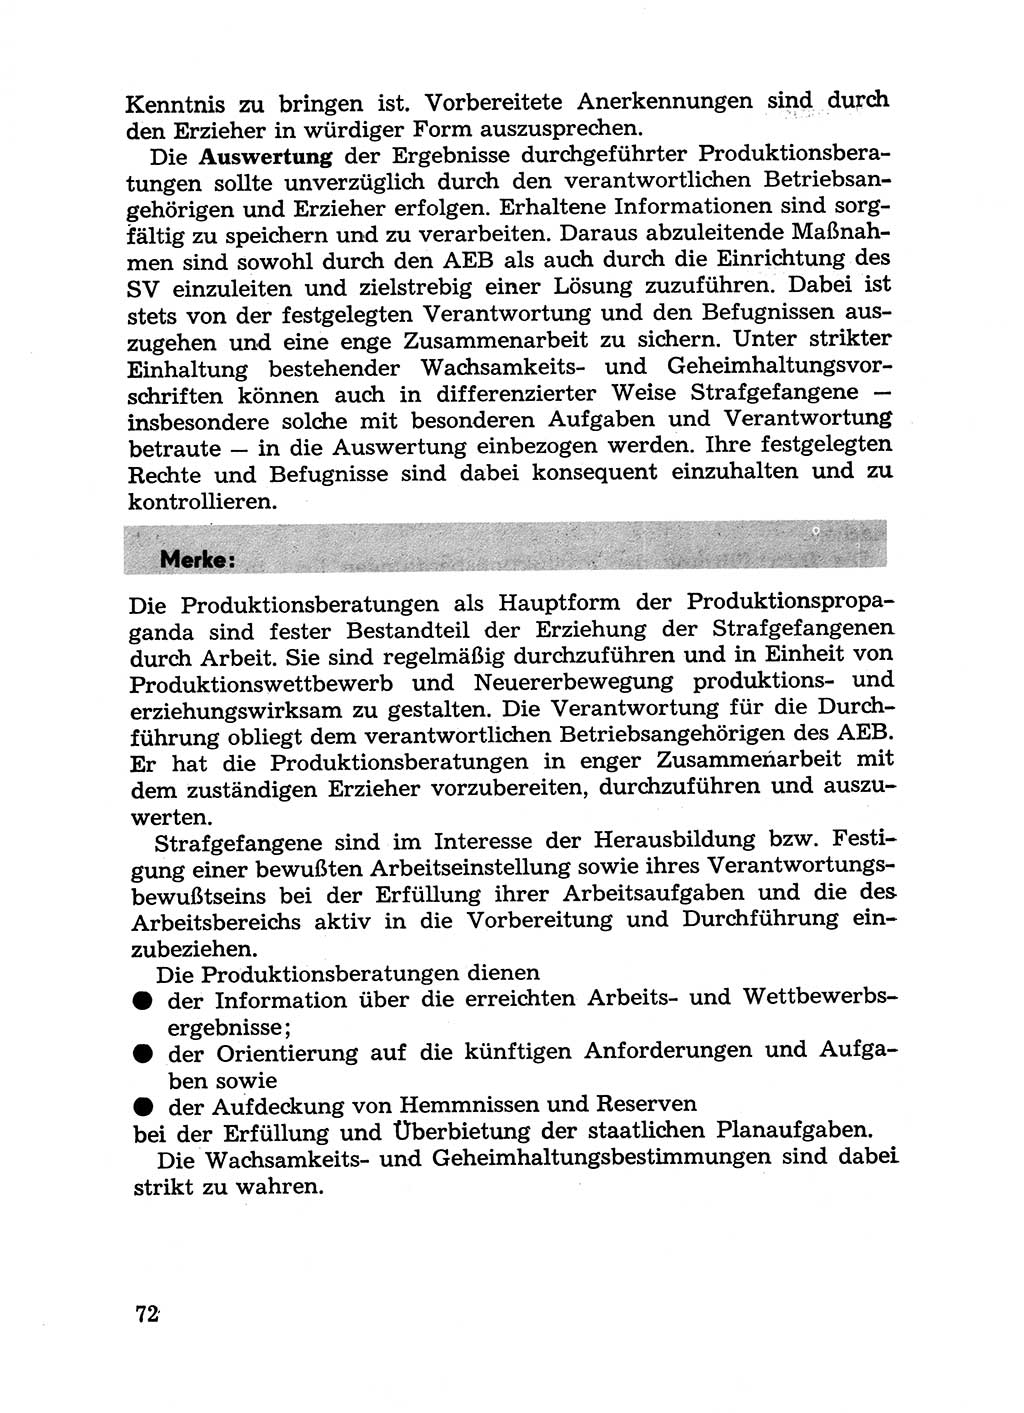 Handbuch für Betriebsangehörige, Abteilung Strafvollzug (SV) [Ministerium des Innern (MdI) Deutsche Demokratische Republik (DDR)] 1981, Seite 72 (Hb. BA Abt. SV MdI DDR 1981, S. 72)